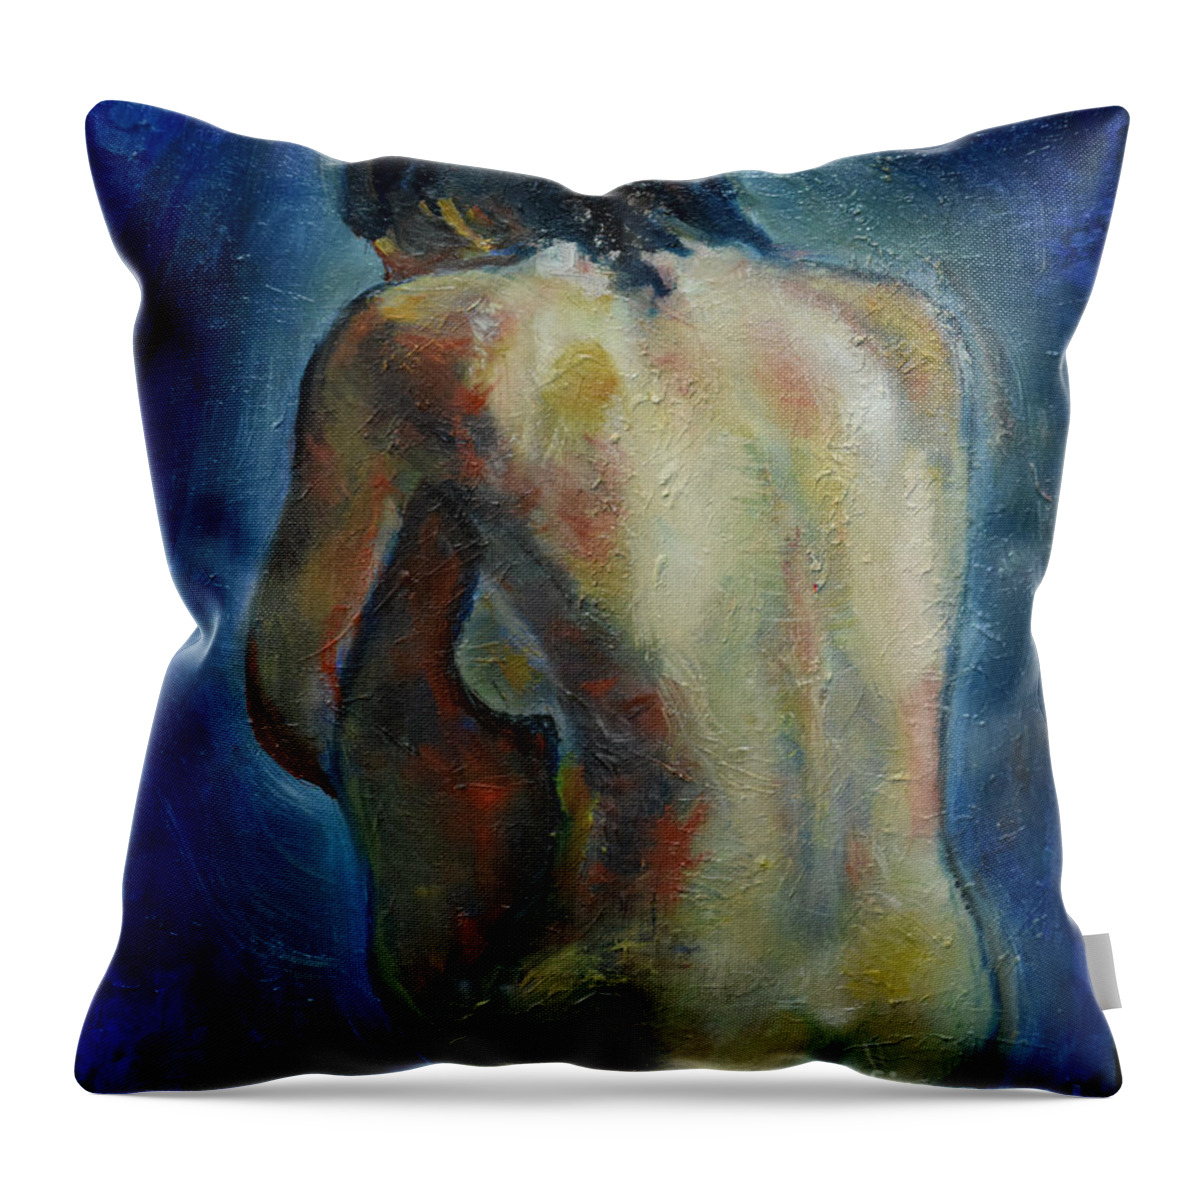 Nude Woman Throw Pillow featuring the painting Sport Girl by Raija Merila